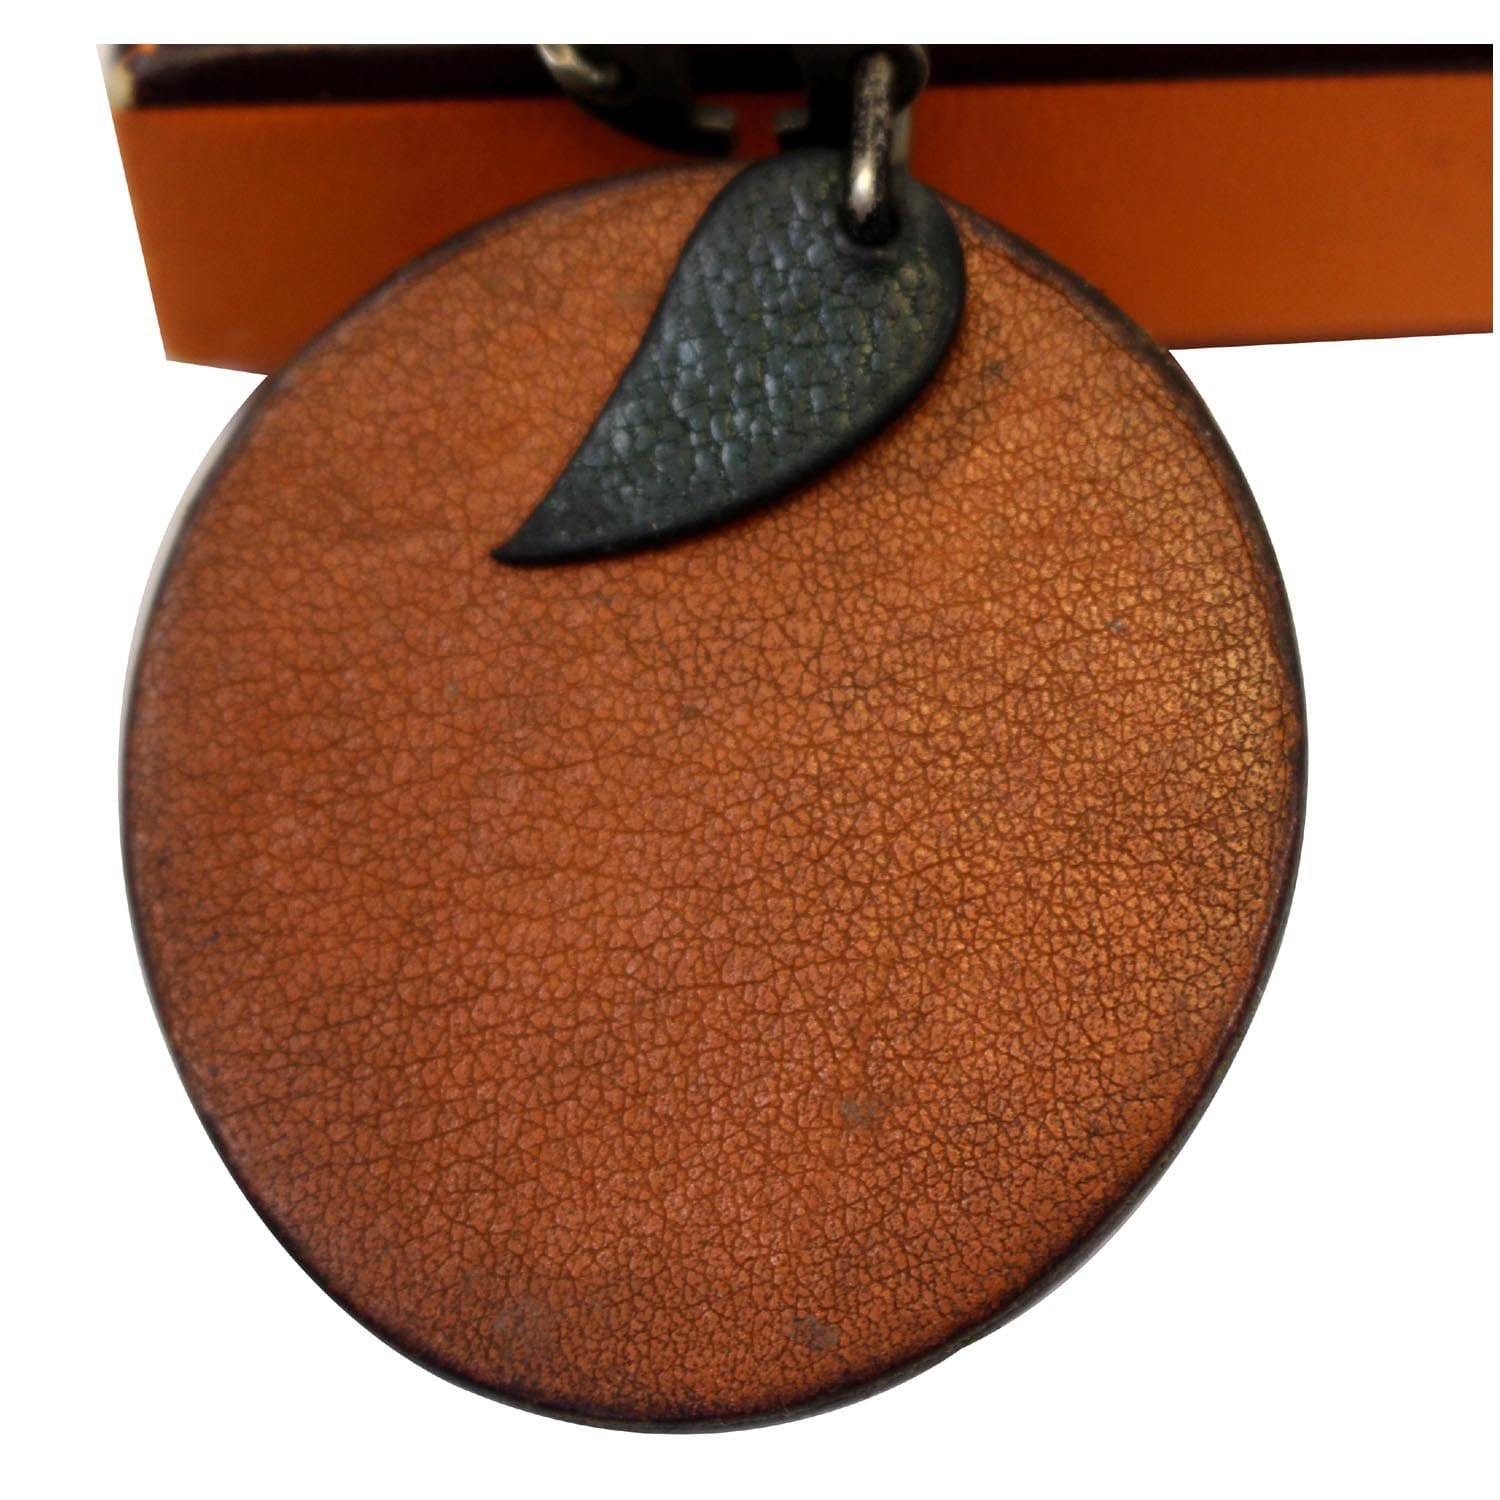 Hermes Chevre Mysore Key Chain Bag Charm Orange